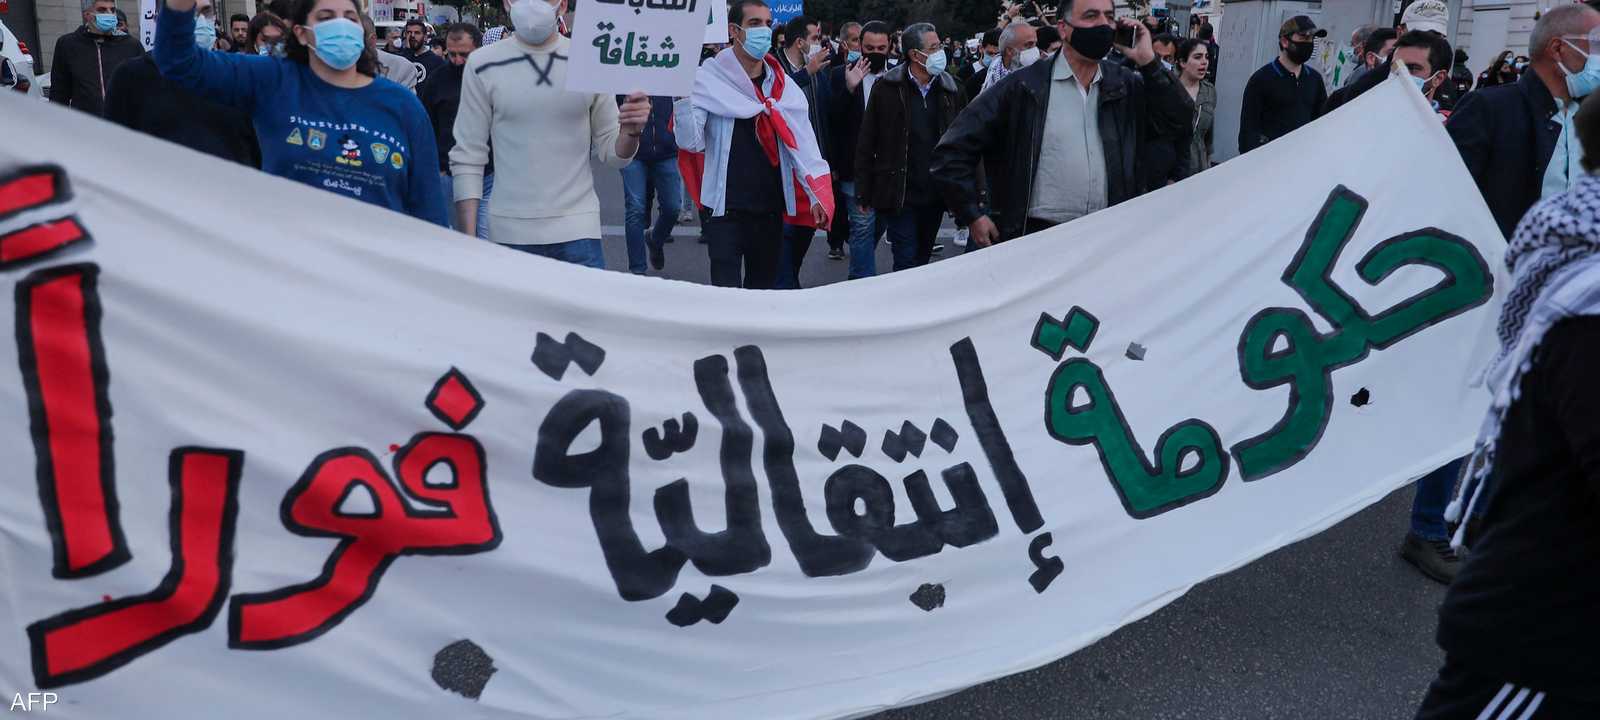 تظاهرة في لبنان تطالب بحكومة انتقالية للخروج من الأزمة